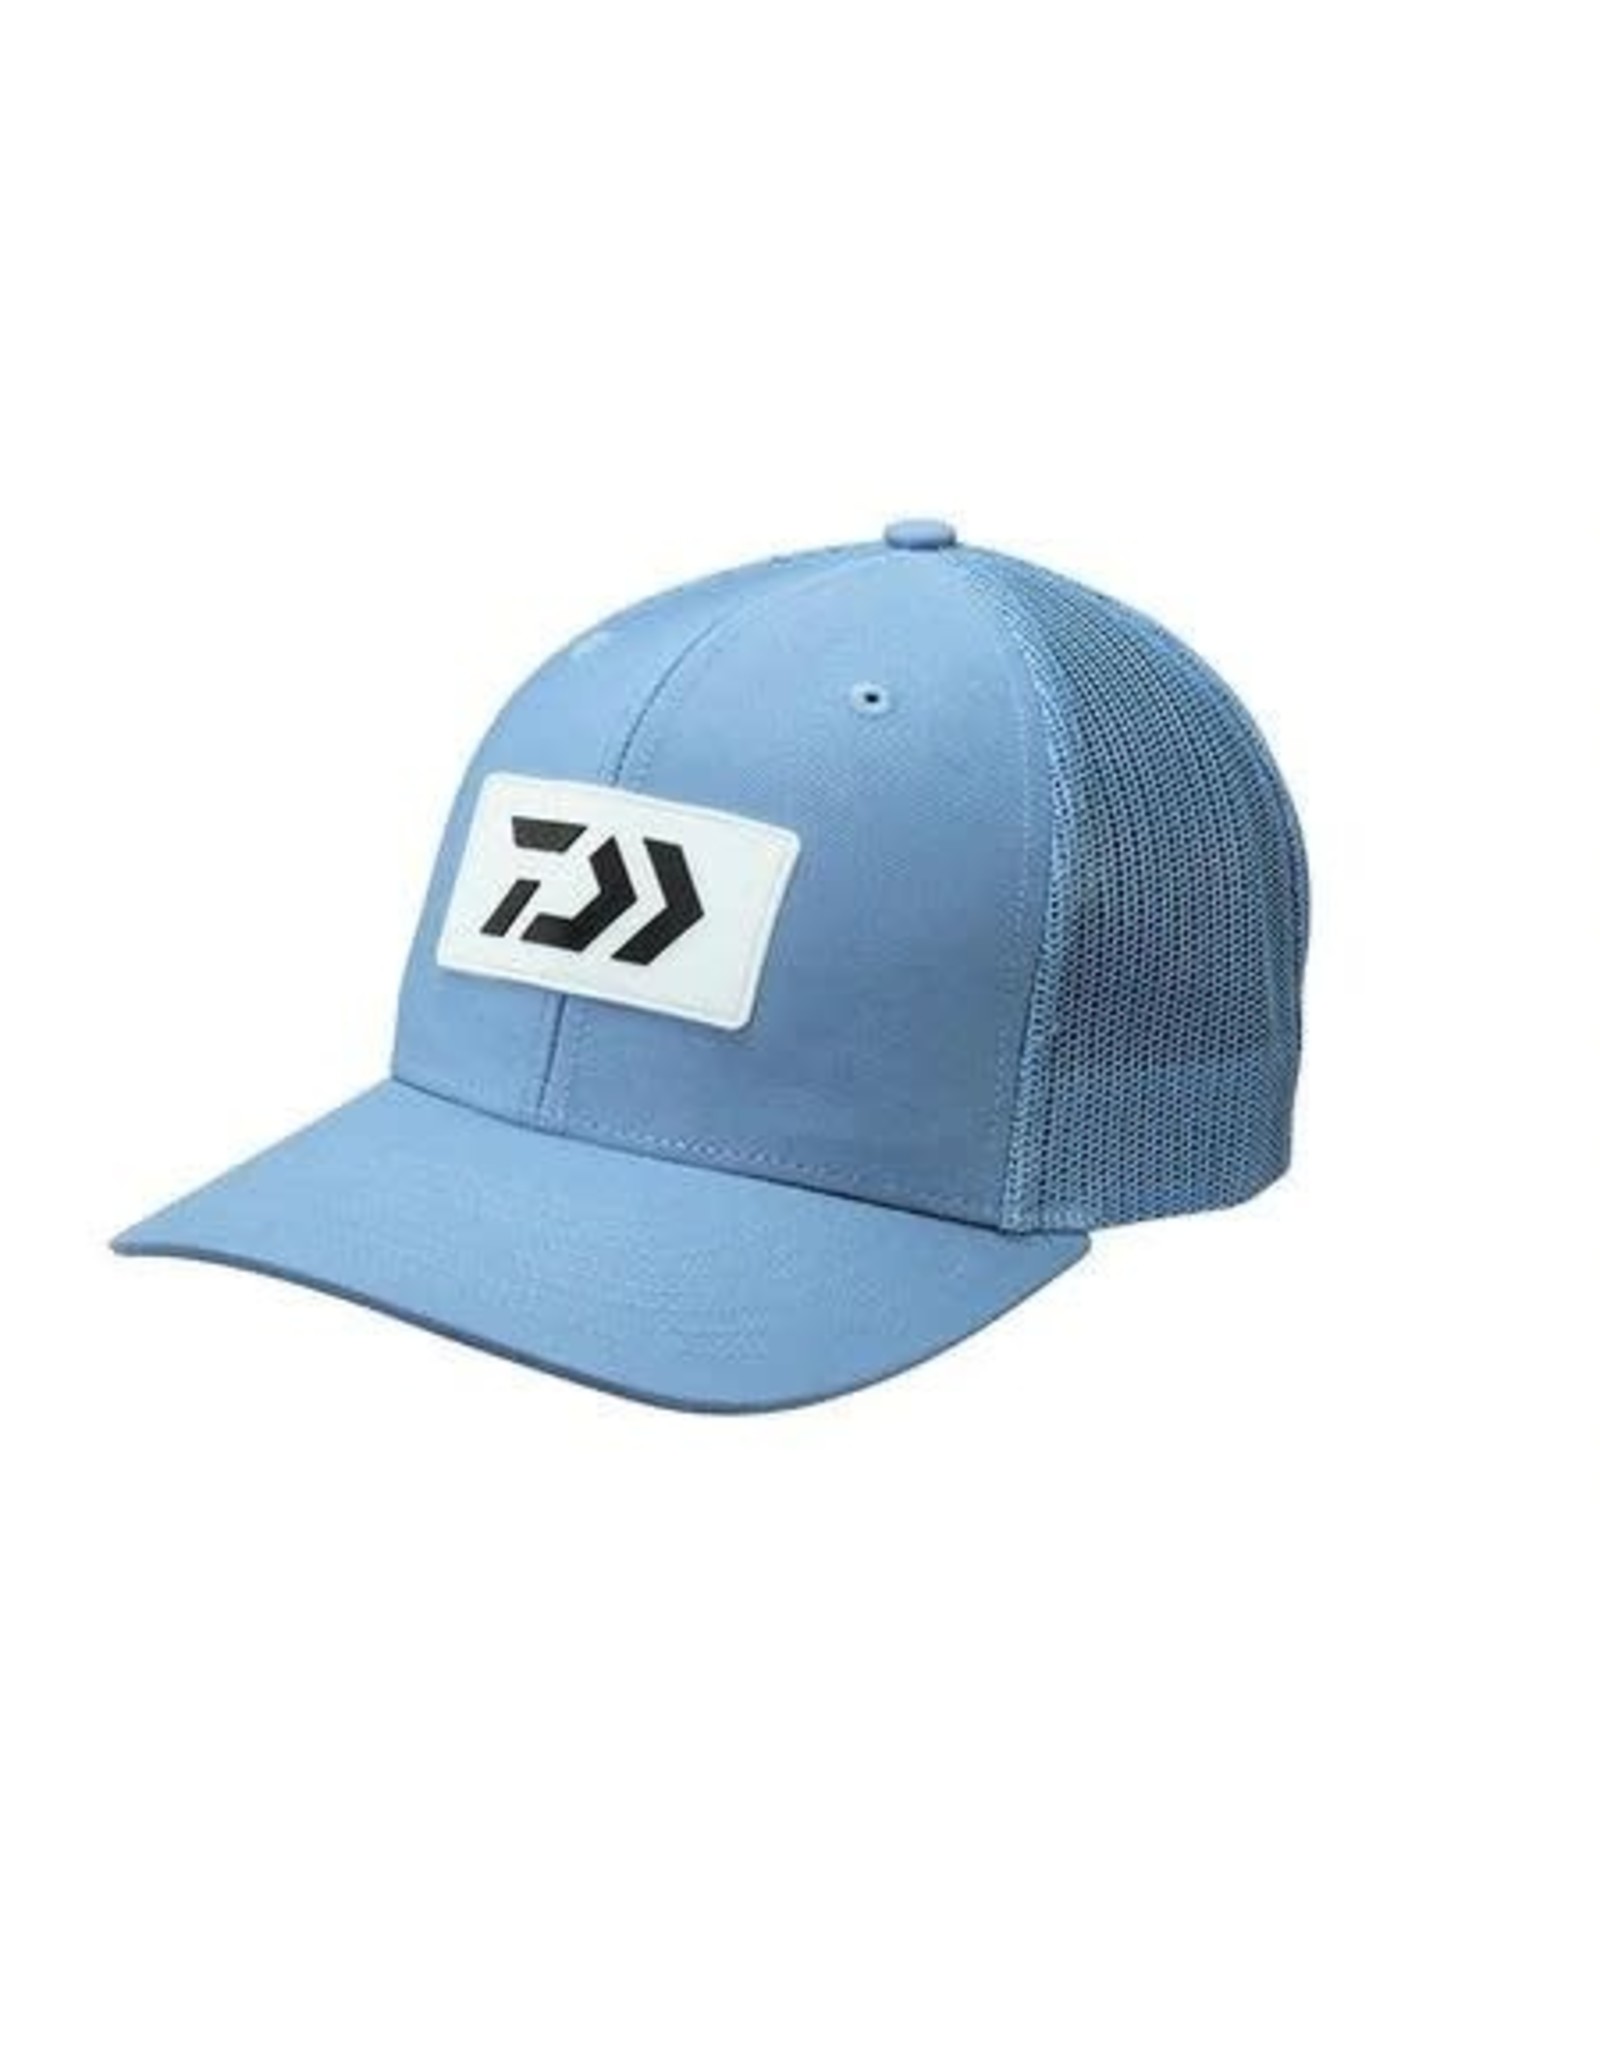 Daiwa Daiwa D-Vec Trucker Hat - BLUE